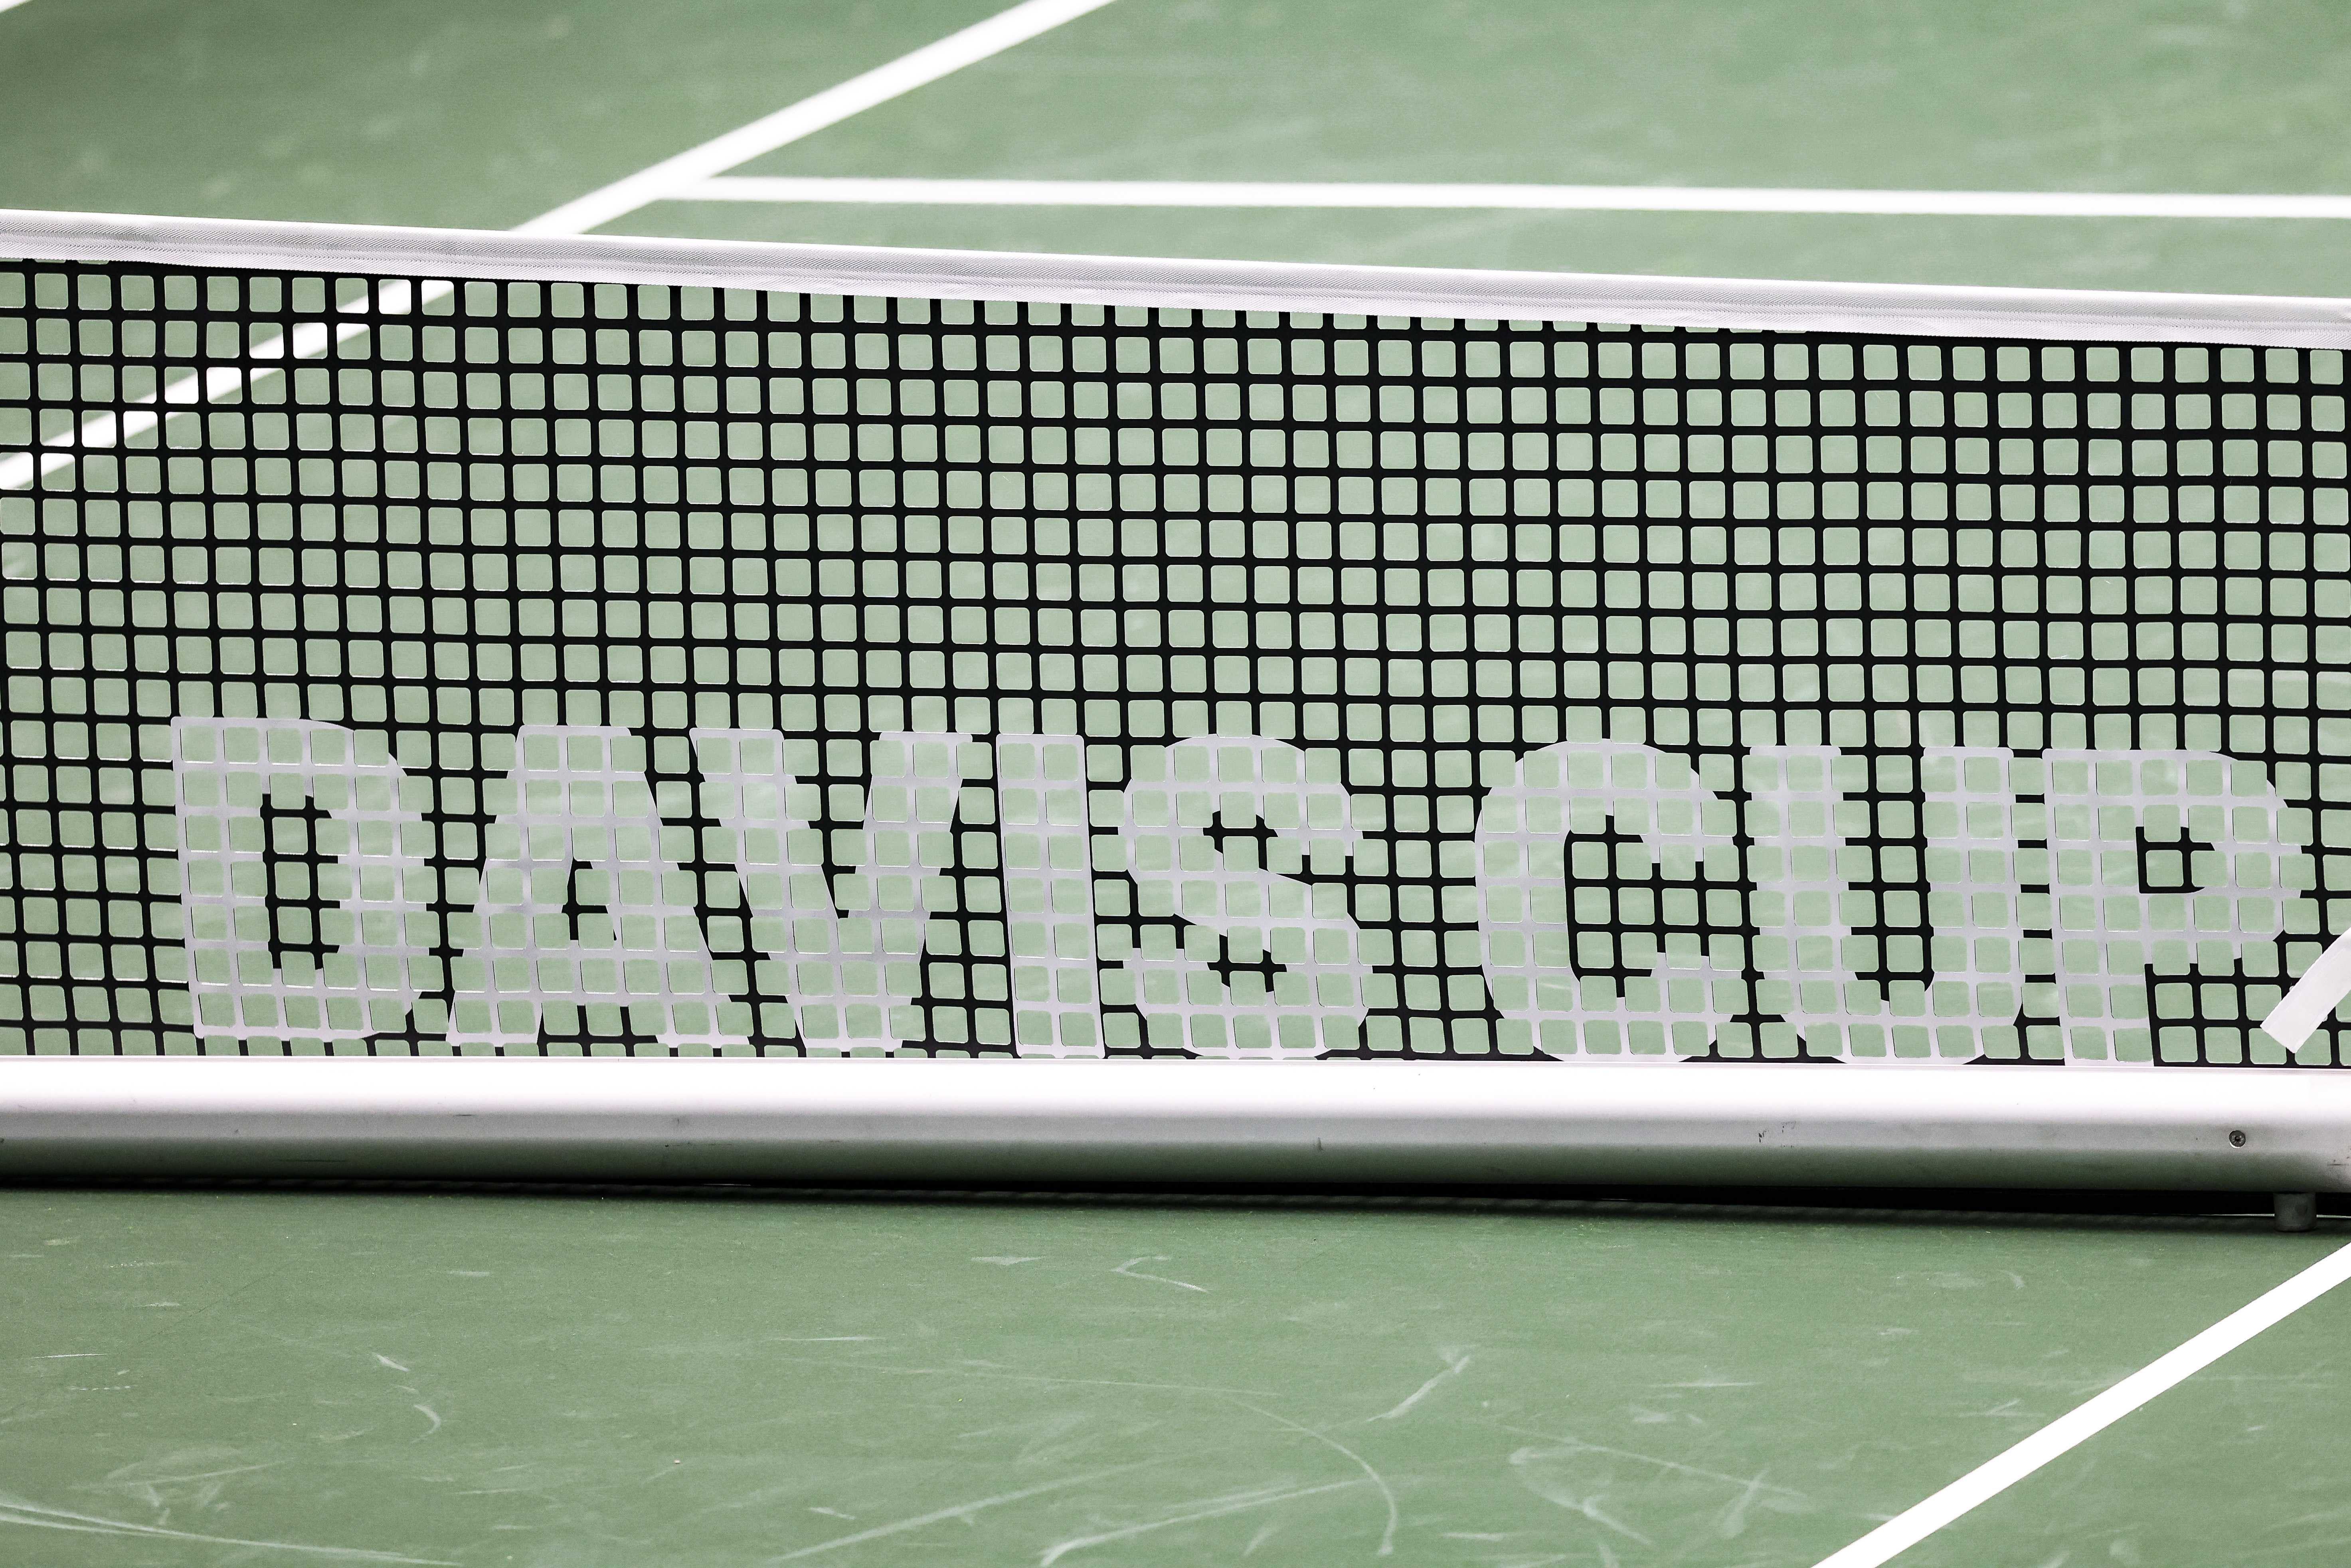 Davis Cup LIVE bei ServusTV im Free-TV und kostenlosen Stream